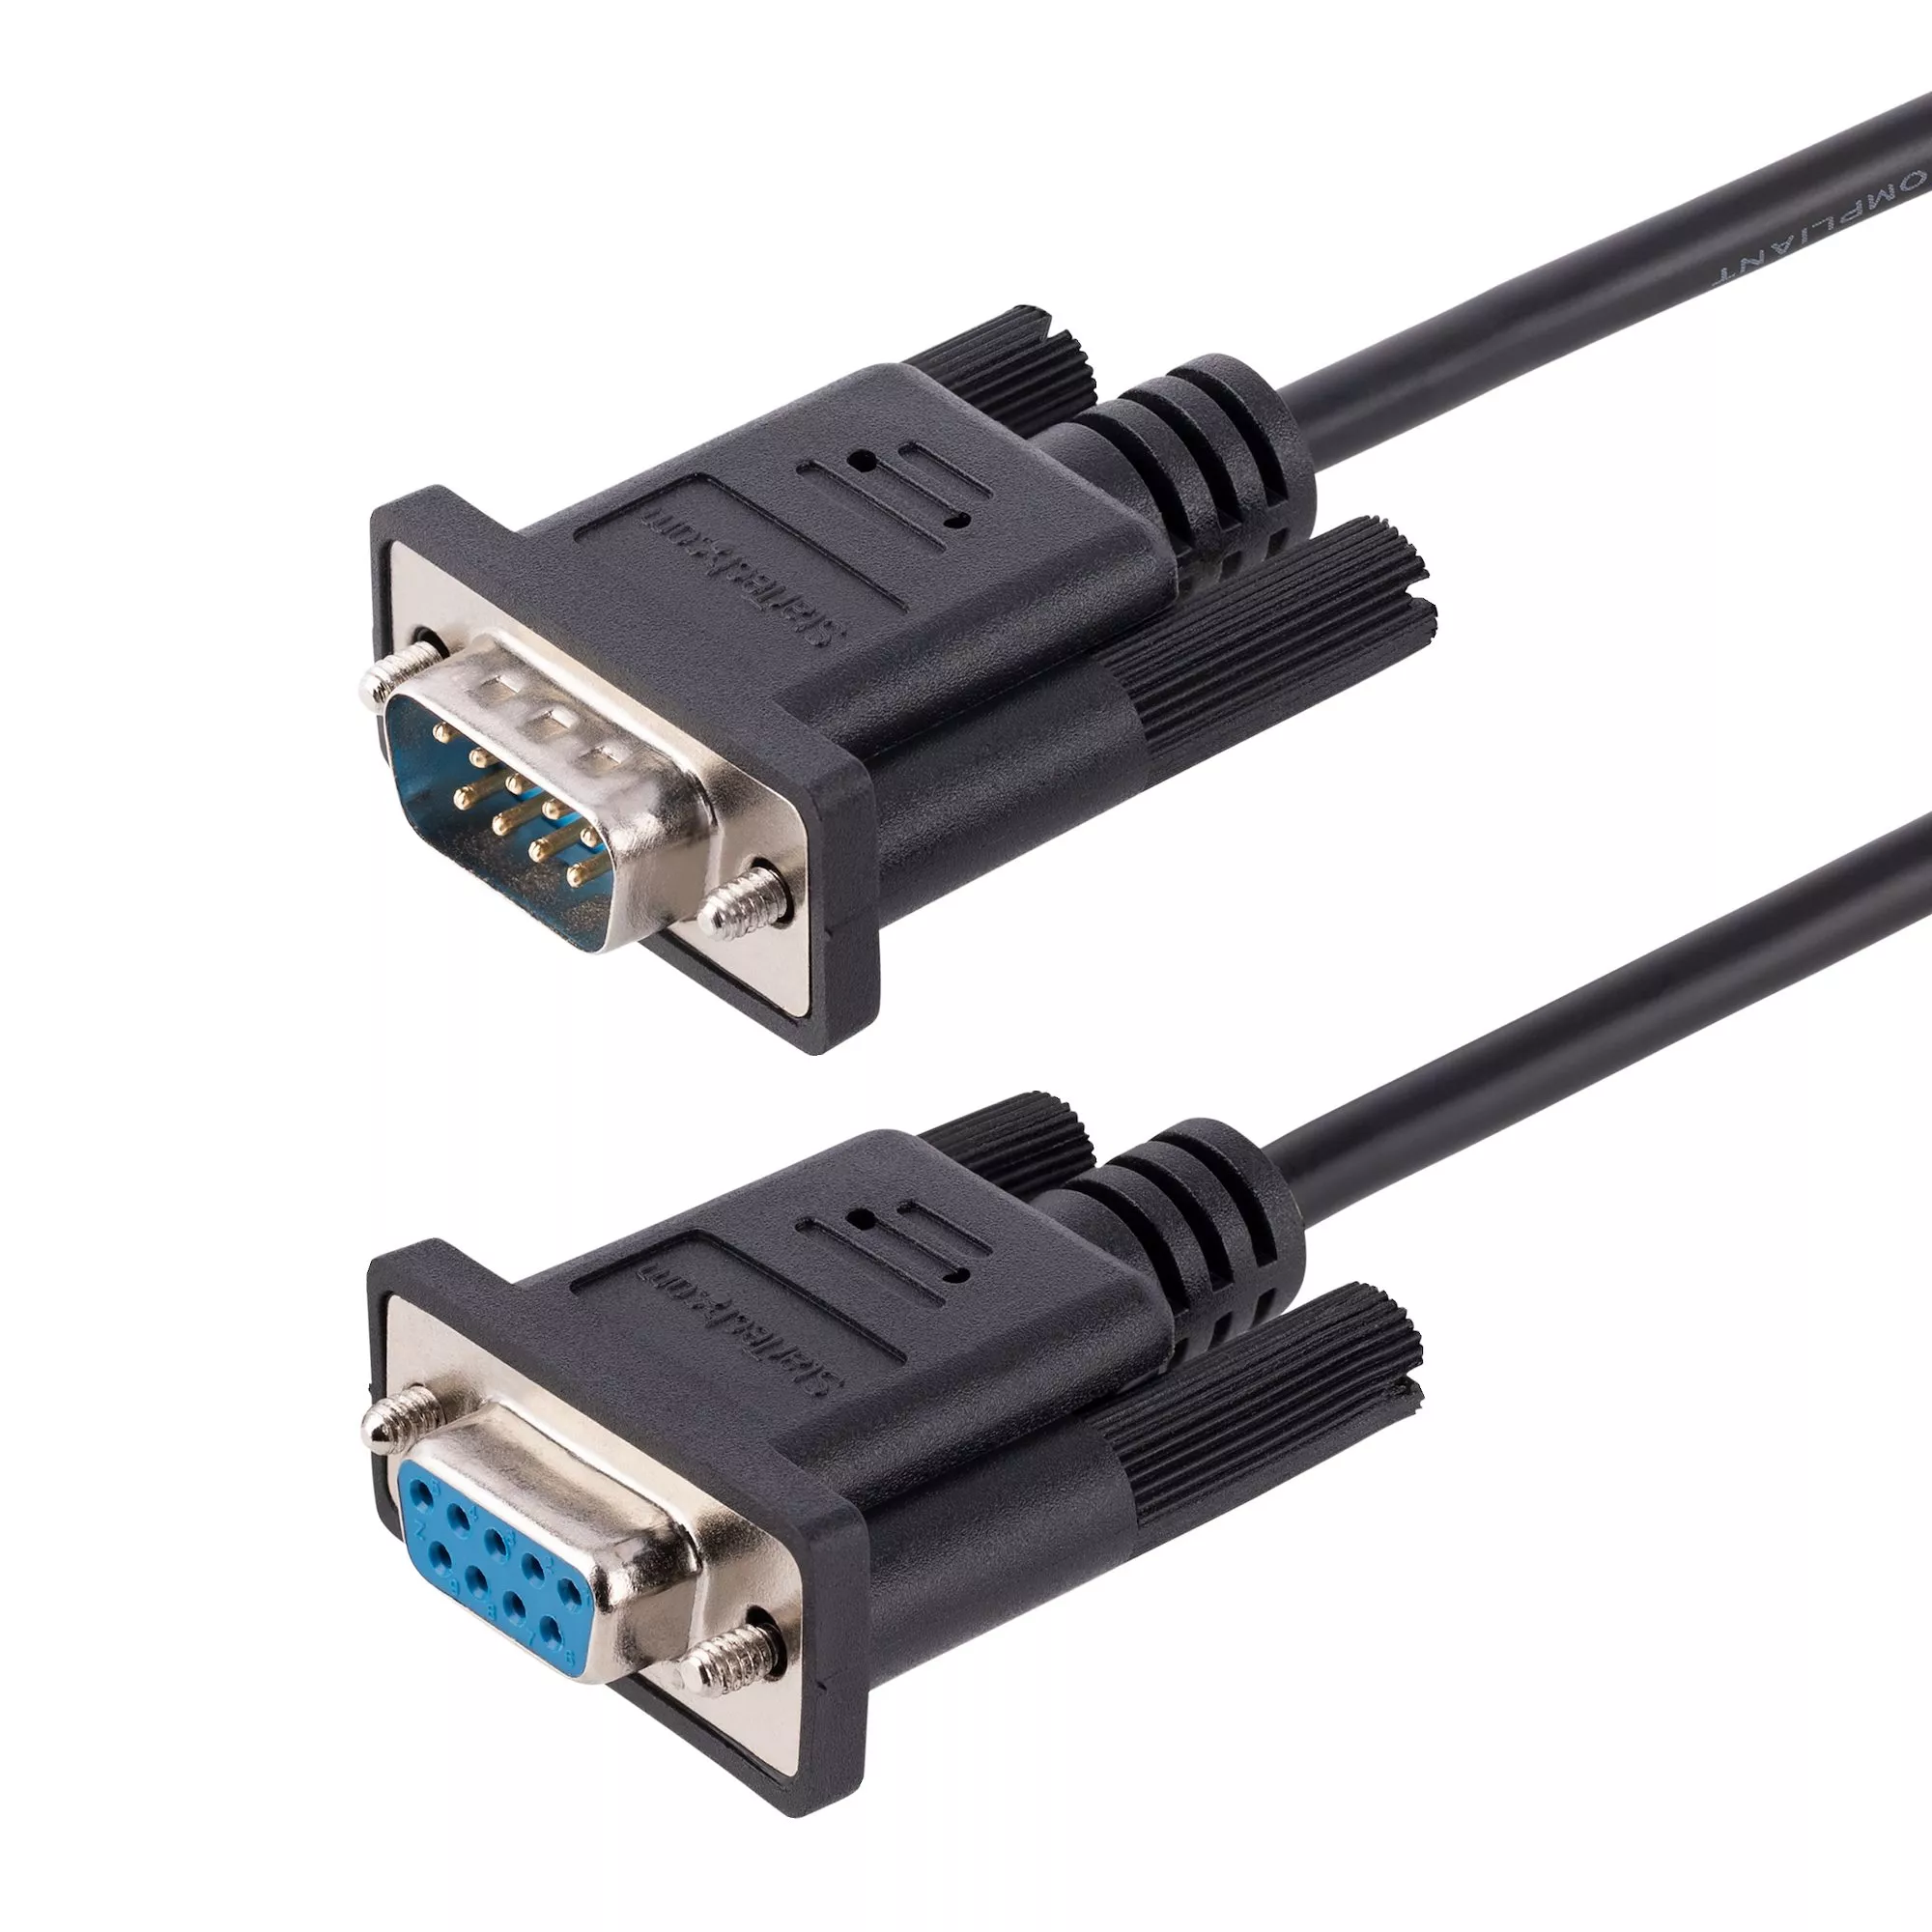 Achat StarTech.com Câble Série RS232 Null Modem de 3m - Cordon au meilleur prix